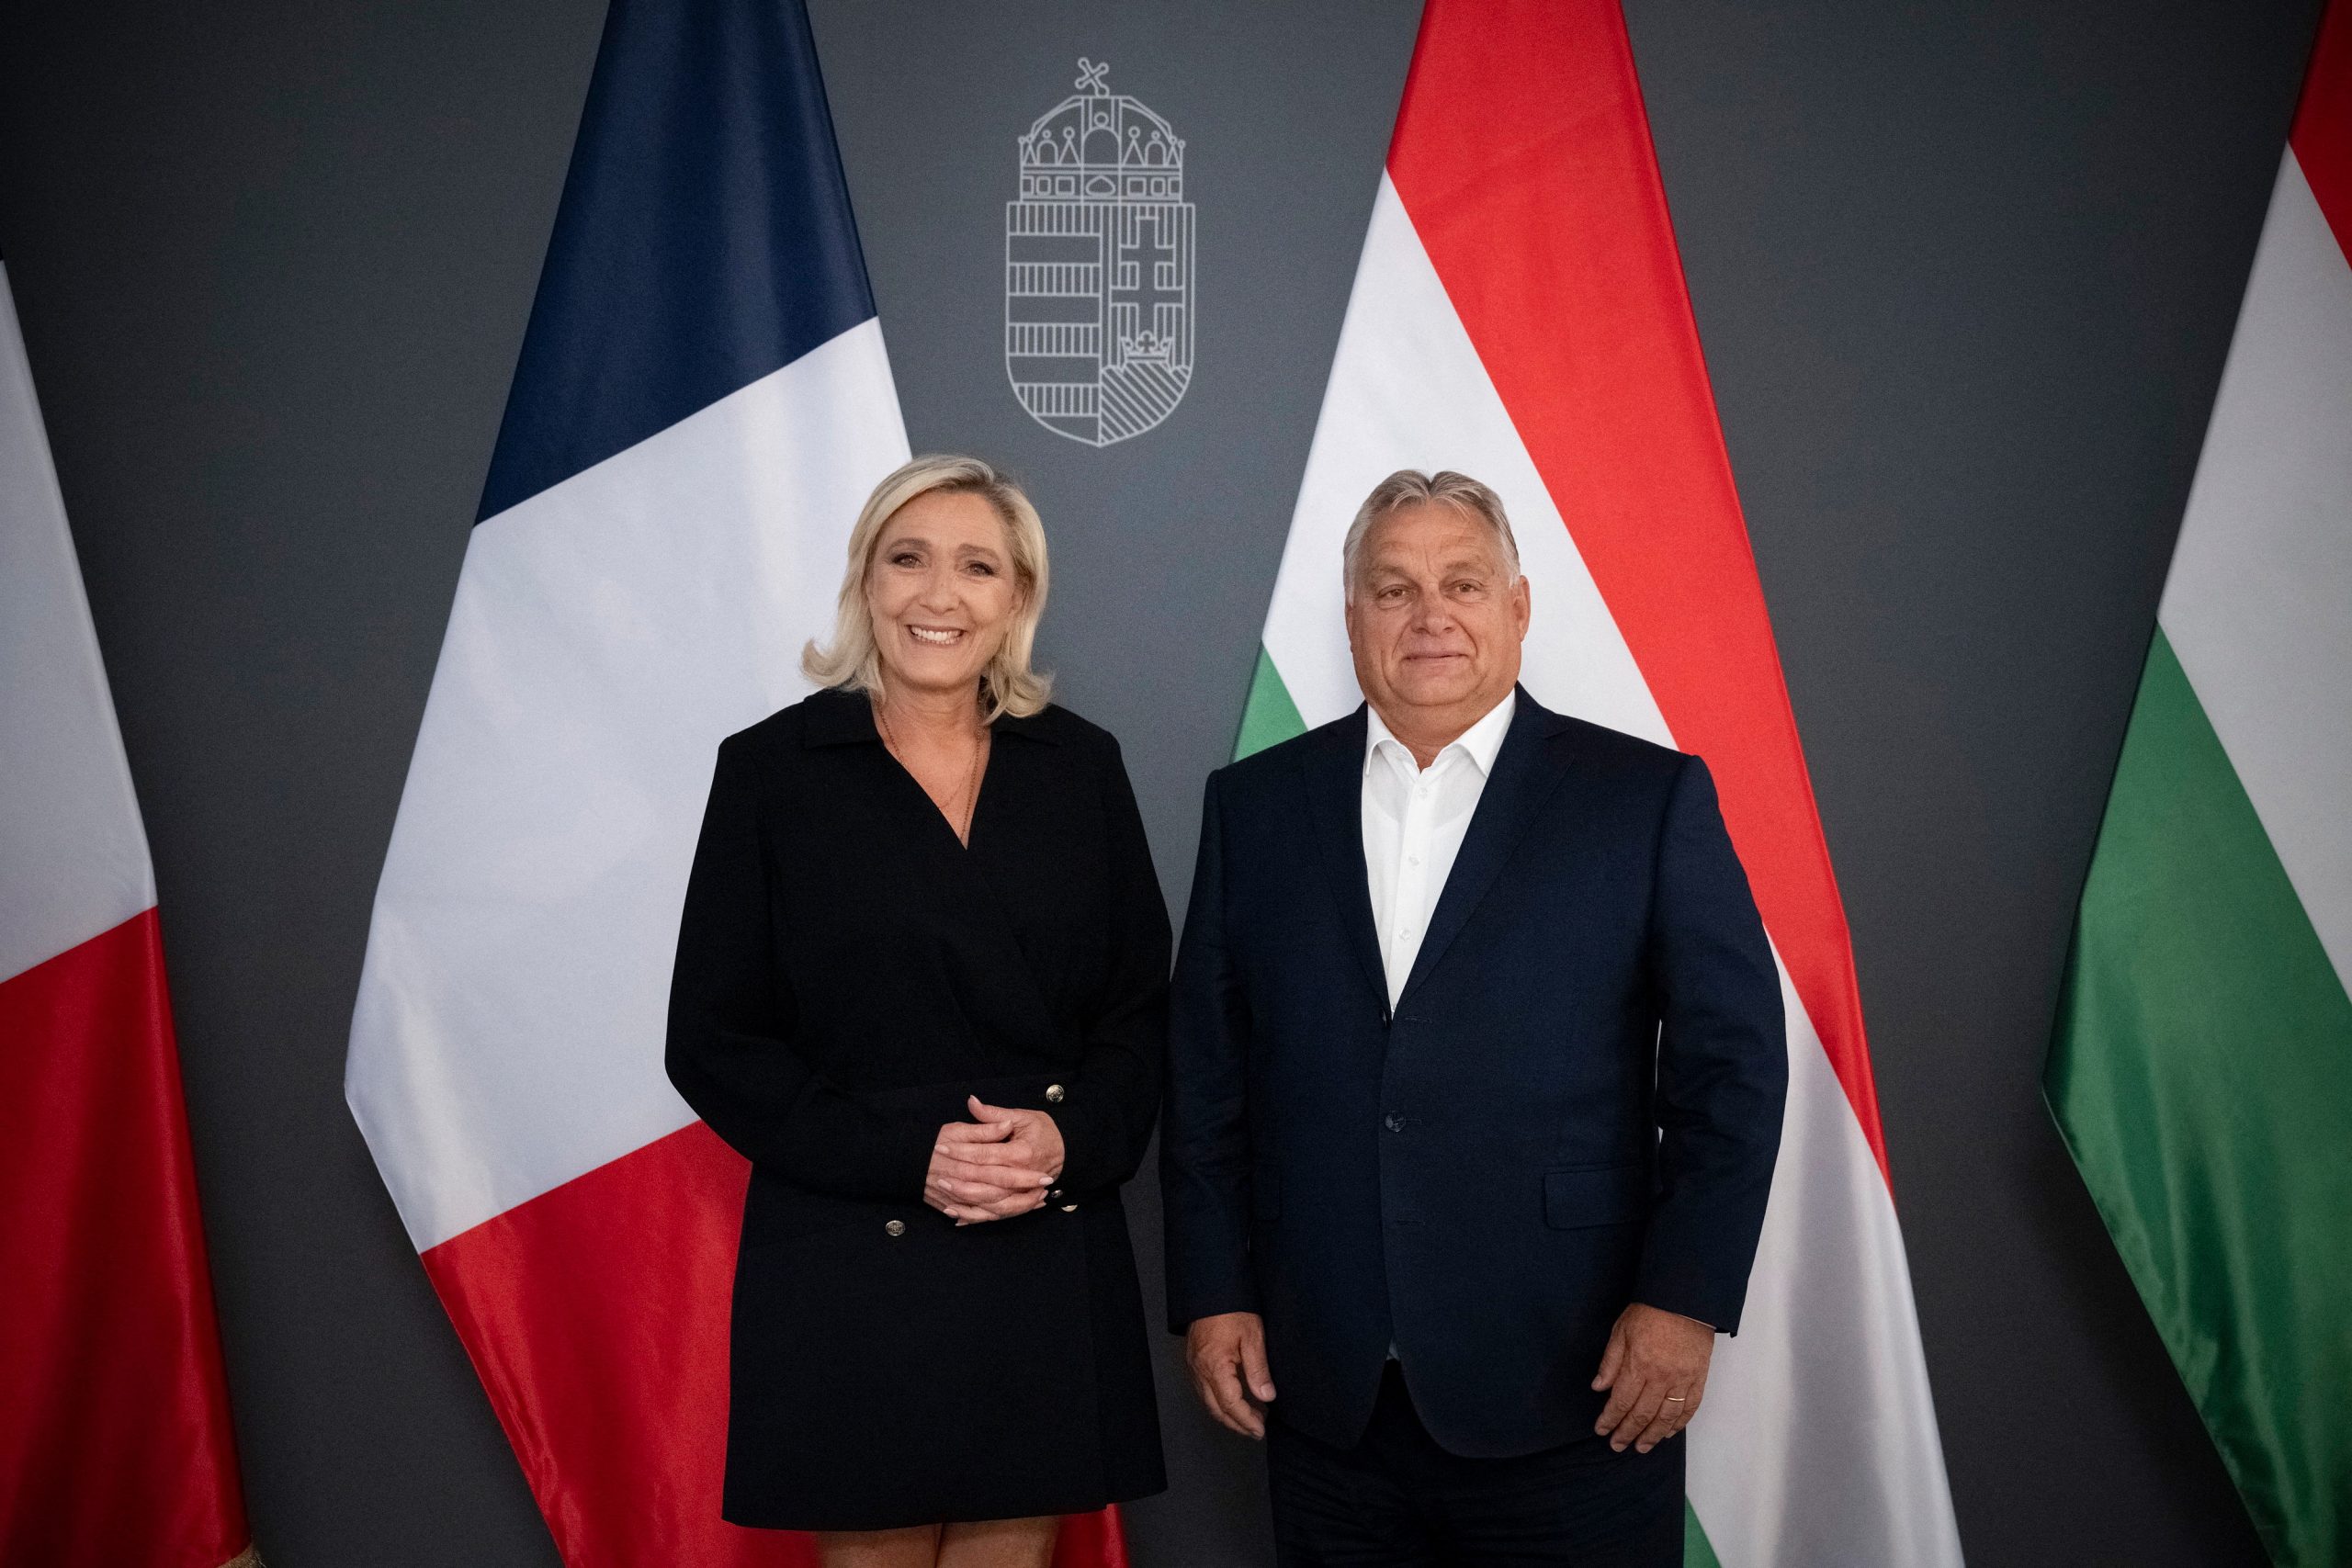 Szédítő pávatáncot hozott, de csak mérsékelten növeli Orbán befolyását az EP jobbra tolódása | G7 – Gazdasági sztorik...